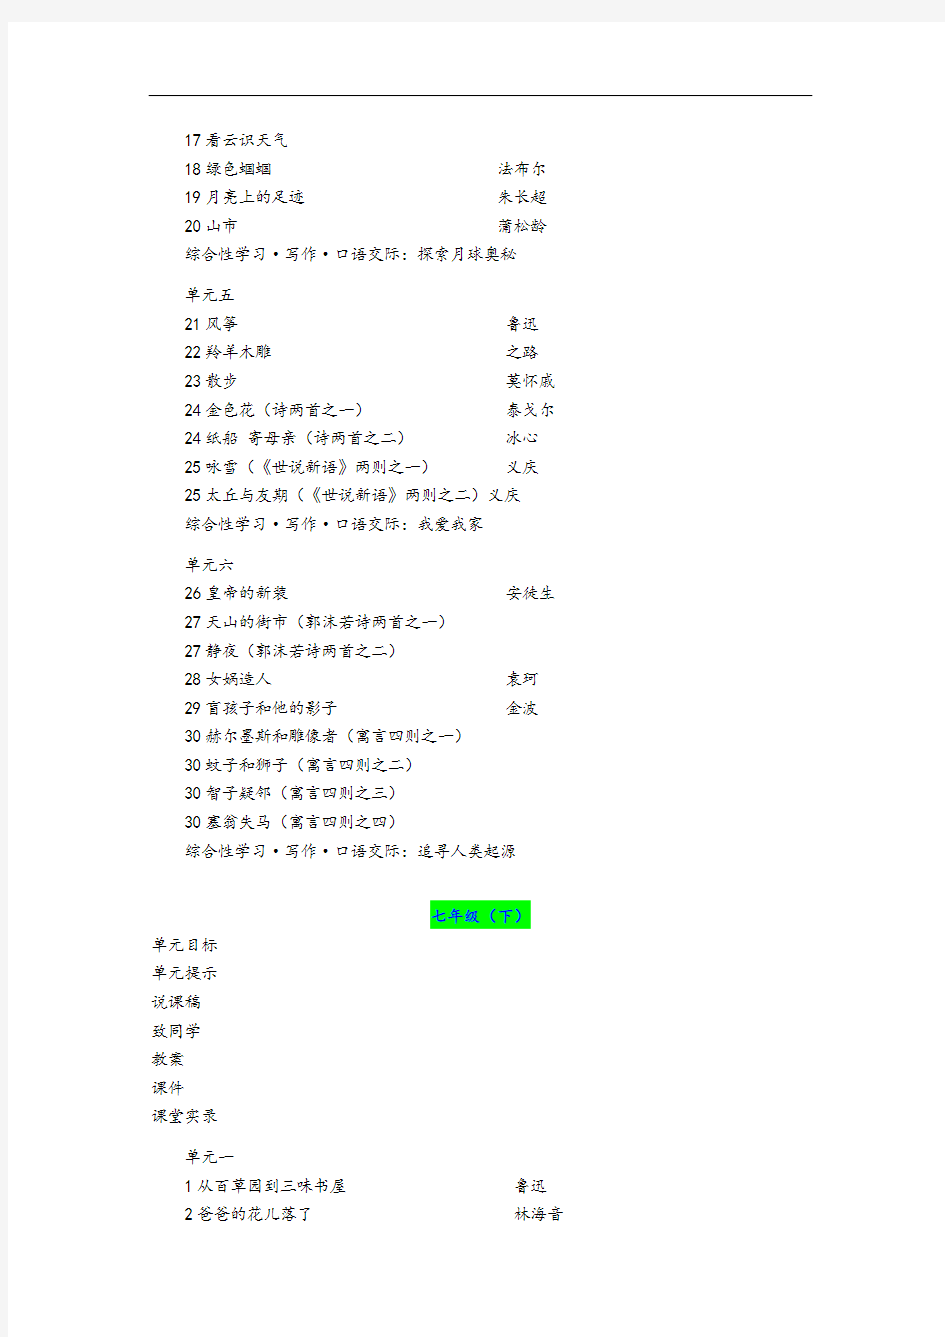 人教版初中语文教材结构体系()